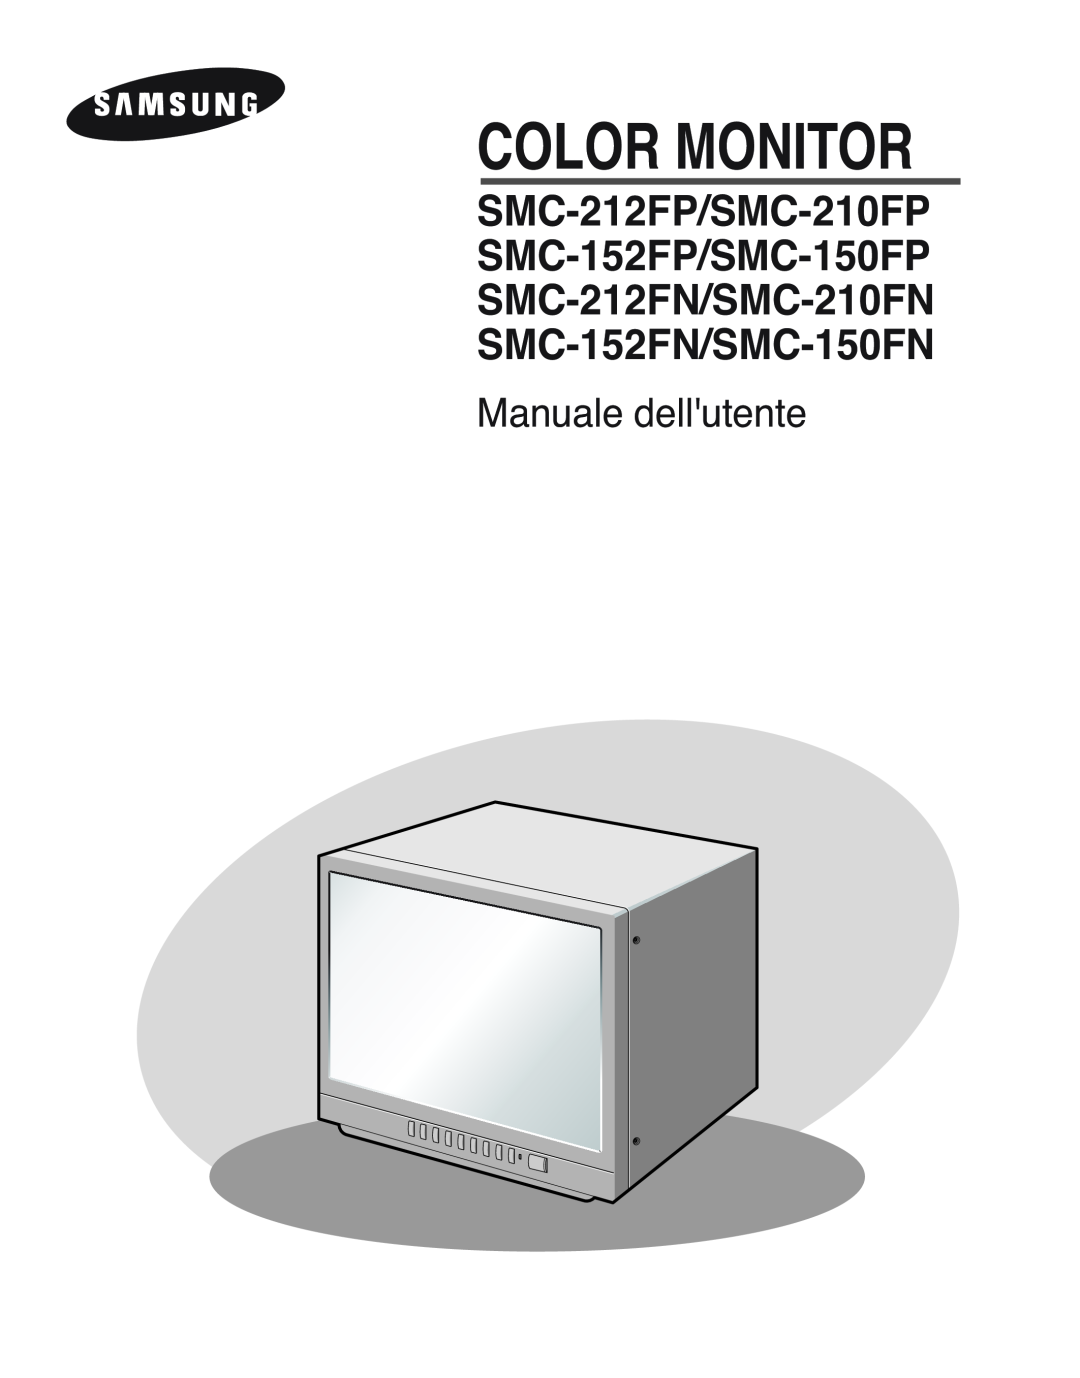 Samsung SMC-152FPV, SMC-212FP, SMC-150FP, SMC-210FPV manual Manuale dellutente, Color Monitor 